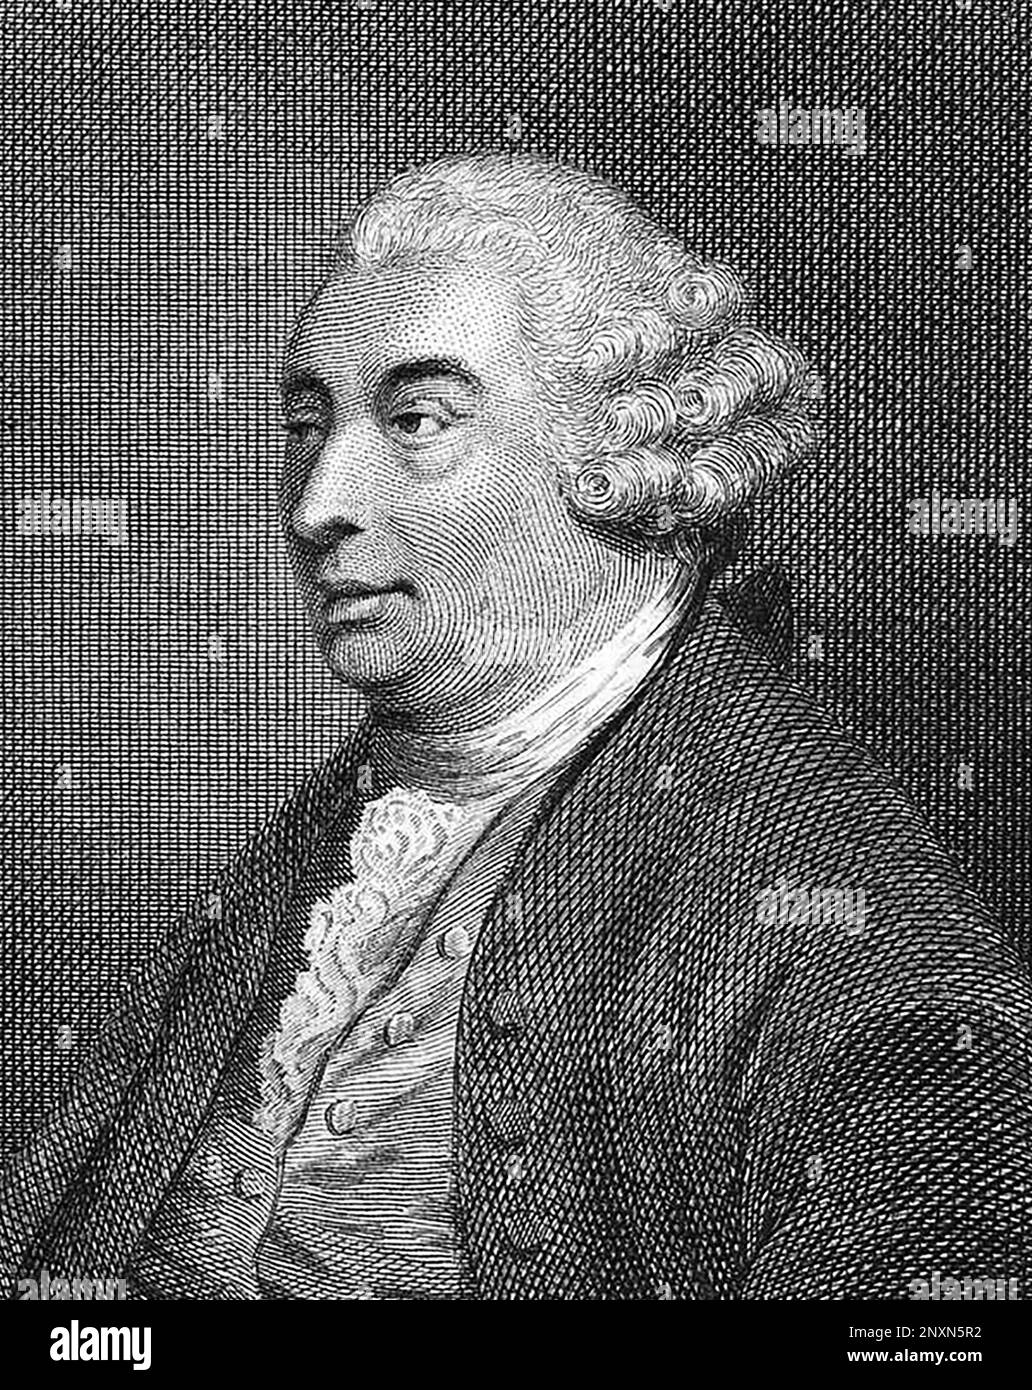 David Hume (1711-1776), schottischer Aufklärungsphilosoph, Historiker und Ökonom, heute bekannt für sein äußerst einflussreiches System philosophischen Empiriismus, Skepsis und Naturalismus. Undatierter Aufdruck von Joseph Collyer (1748-1827) nach Thomas Stothard (1755-1834). Stockfoto